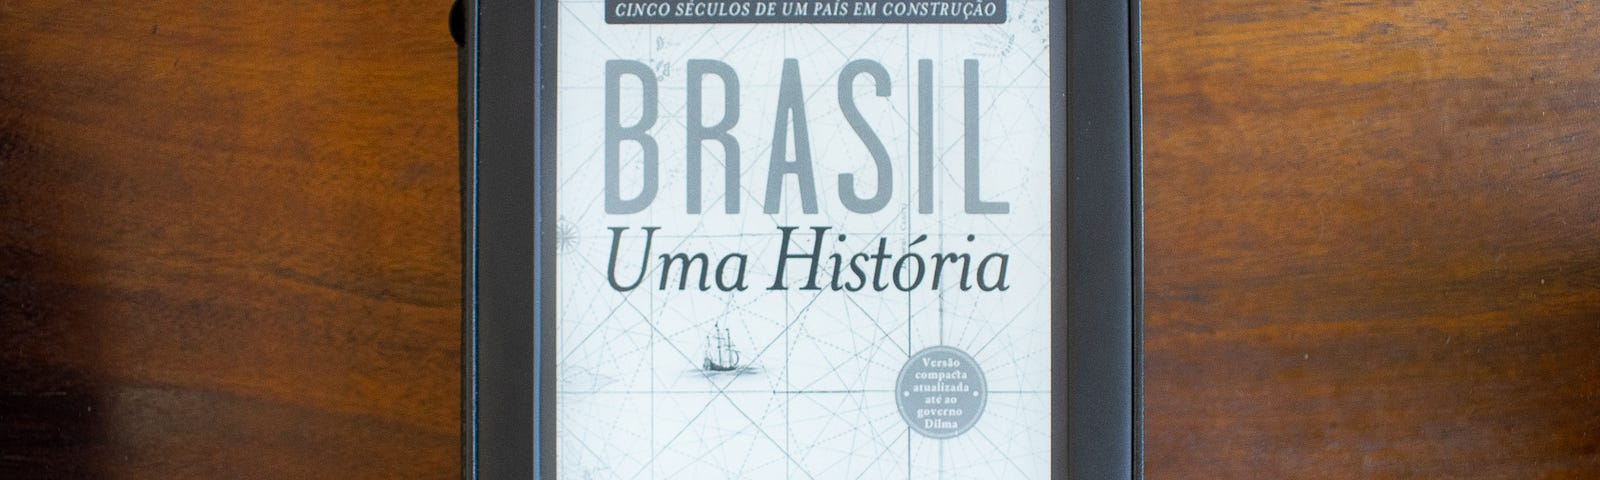 Um kindle com o livro Brasil: Uma História aberto.